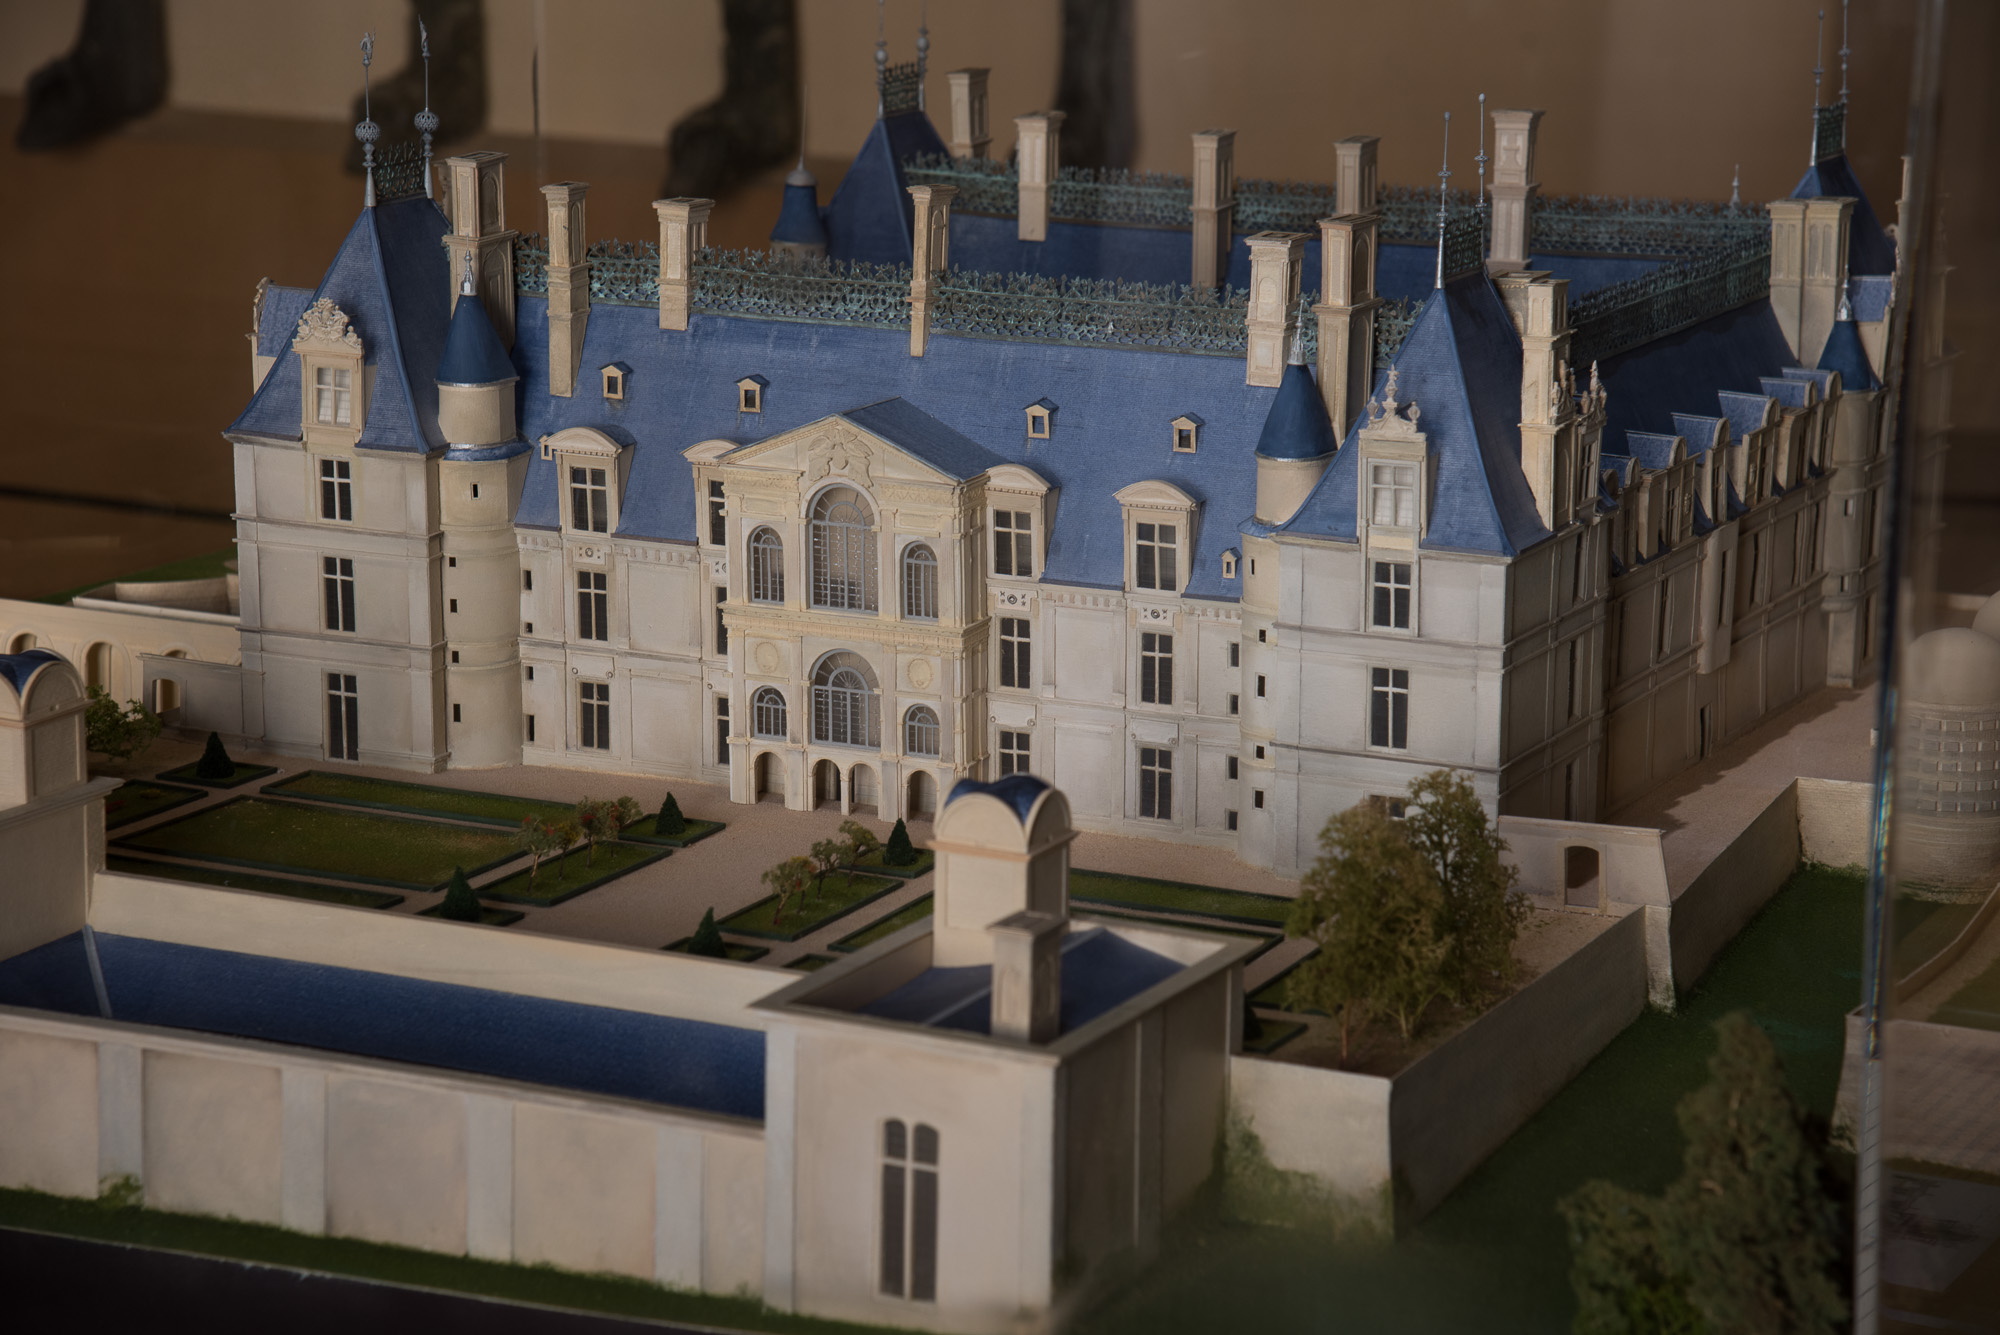 La maquette du château exposée  au rez-de-chaussée. Elle présente l'édifice au milieu du XVIème siècle, avec l'aile disparue et le jeu de paume édifié contre la terrasse Nord.